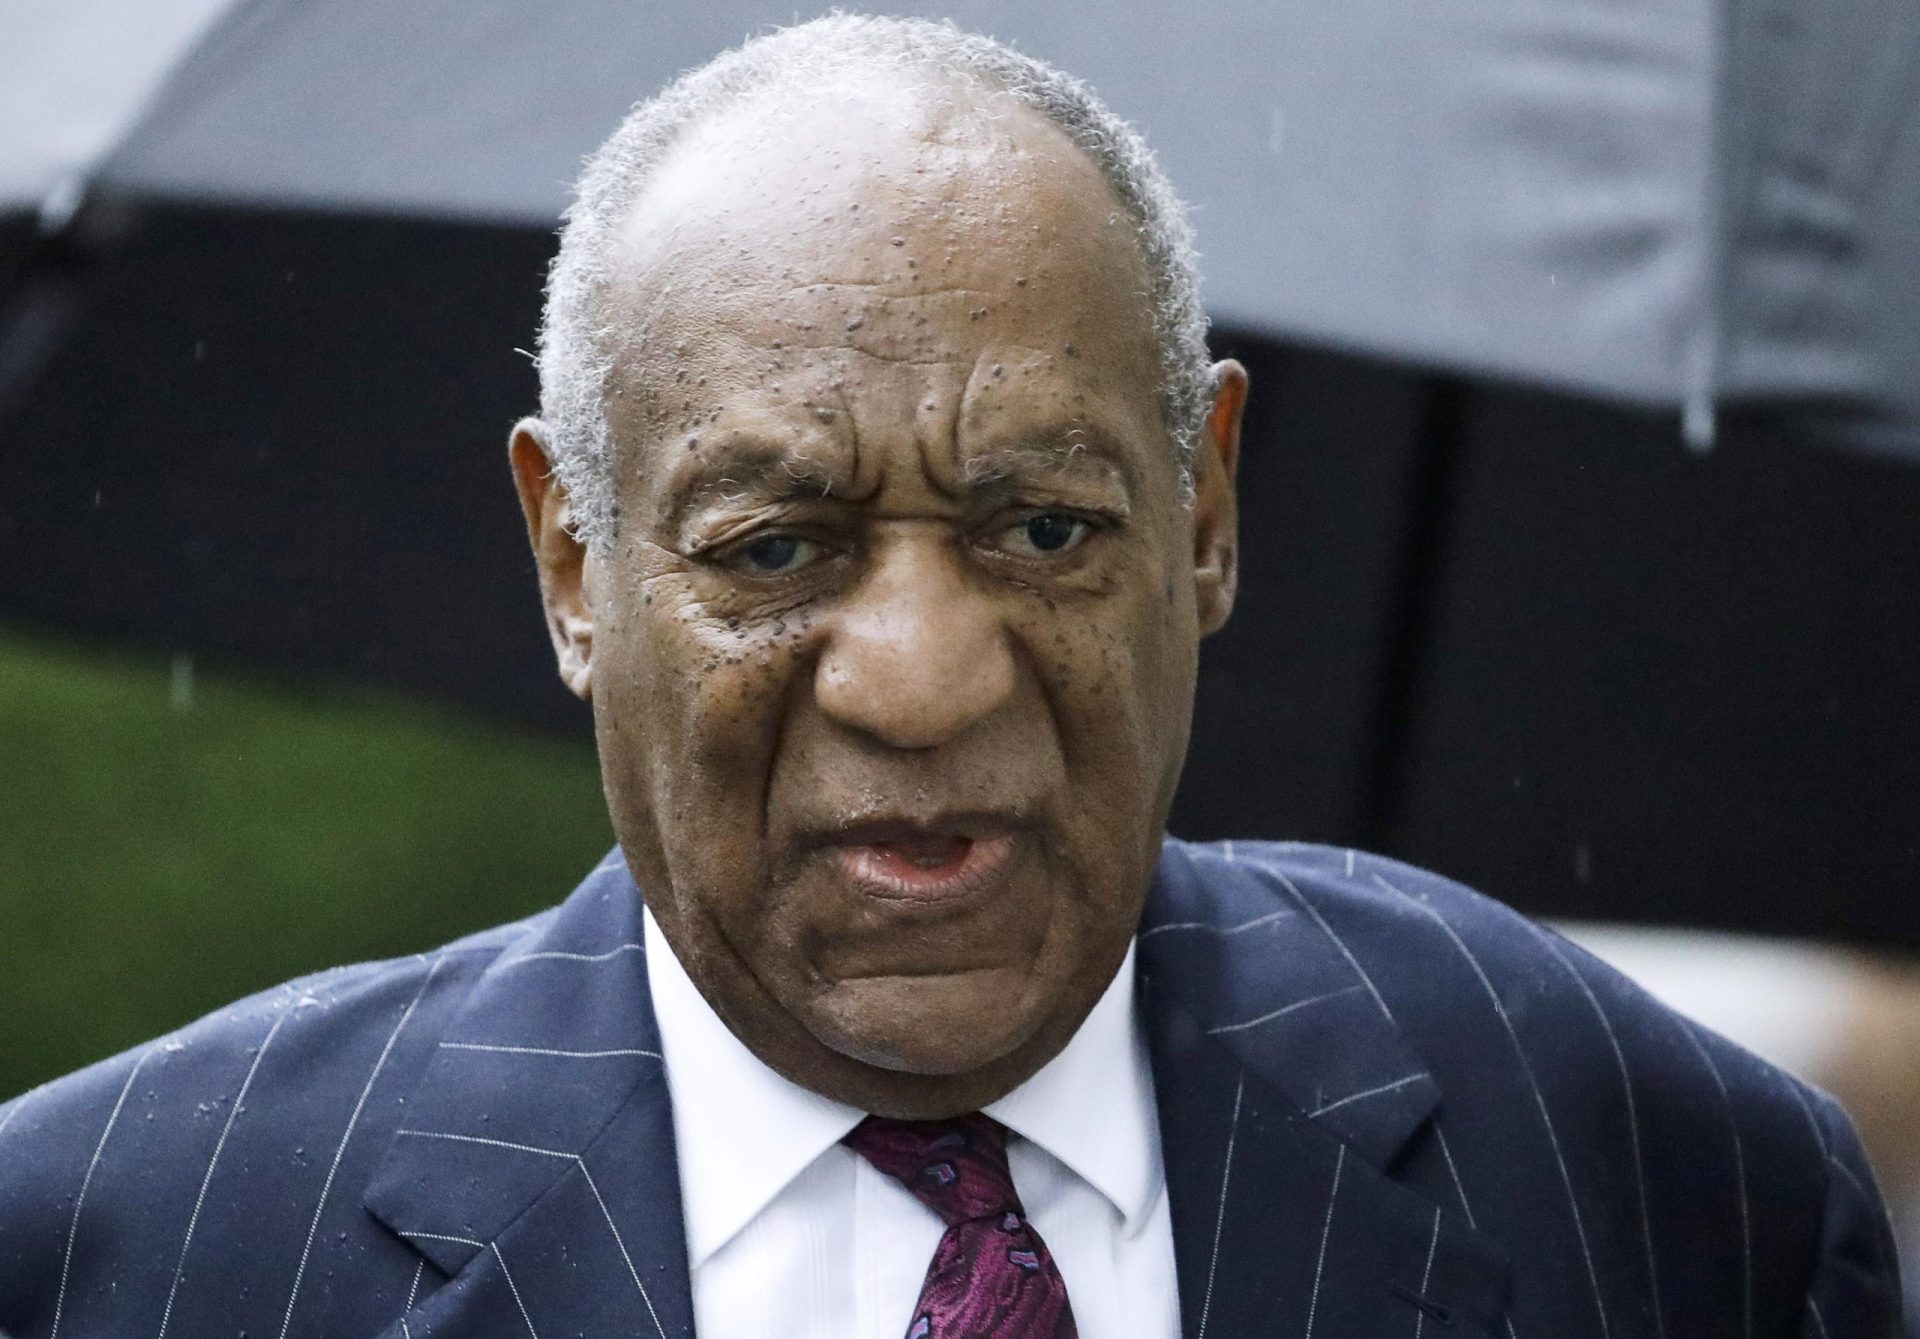 El abogado de Cosby insta a los miembros del jurado a considerar solo las pruebas del juicio